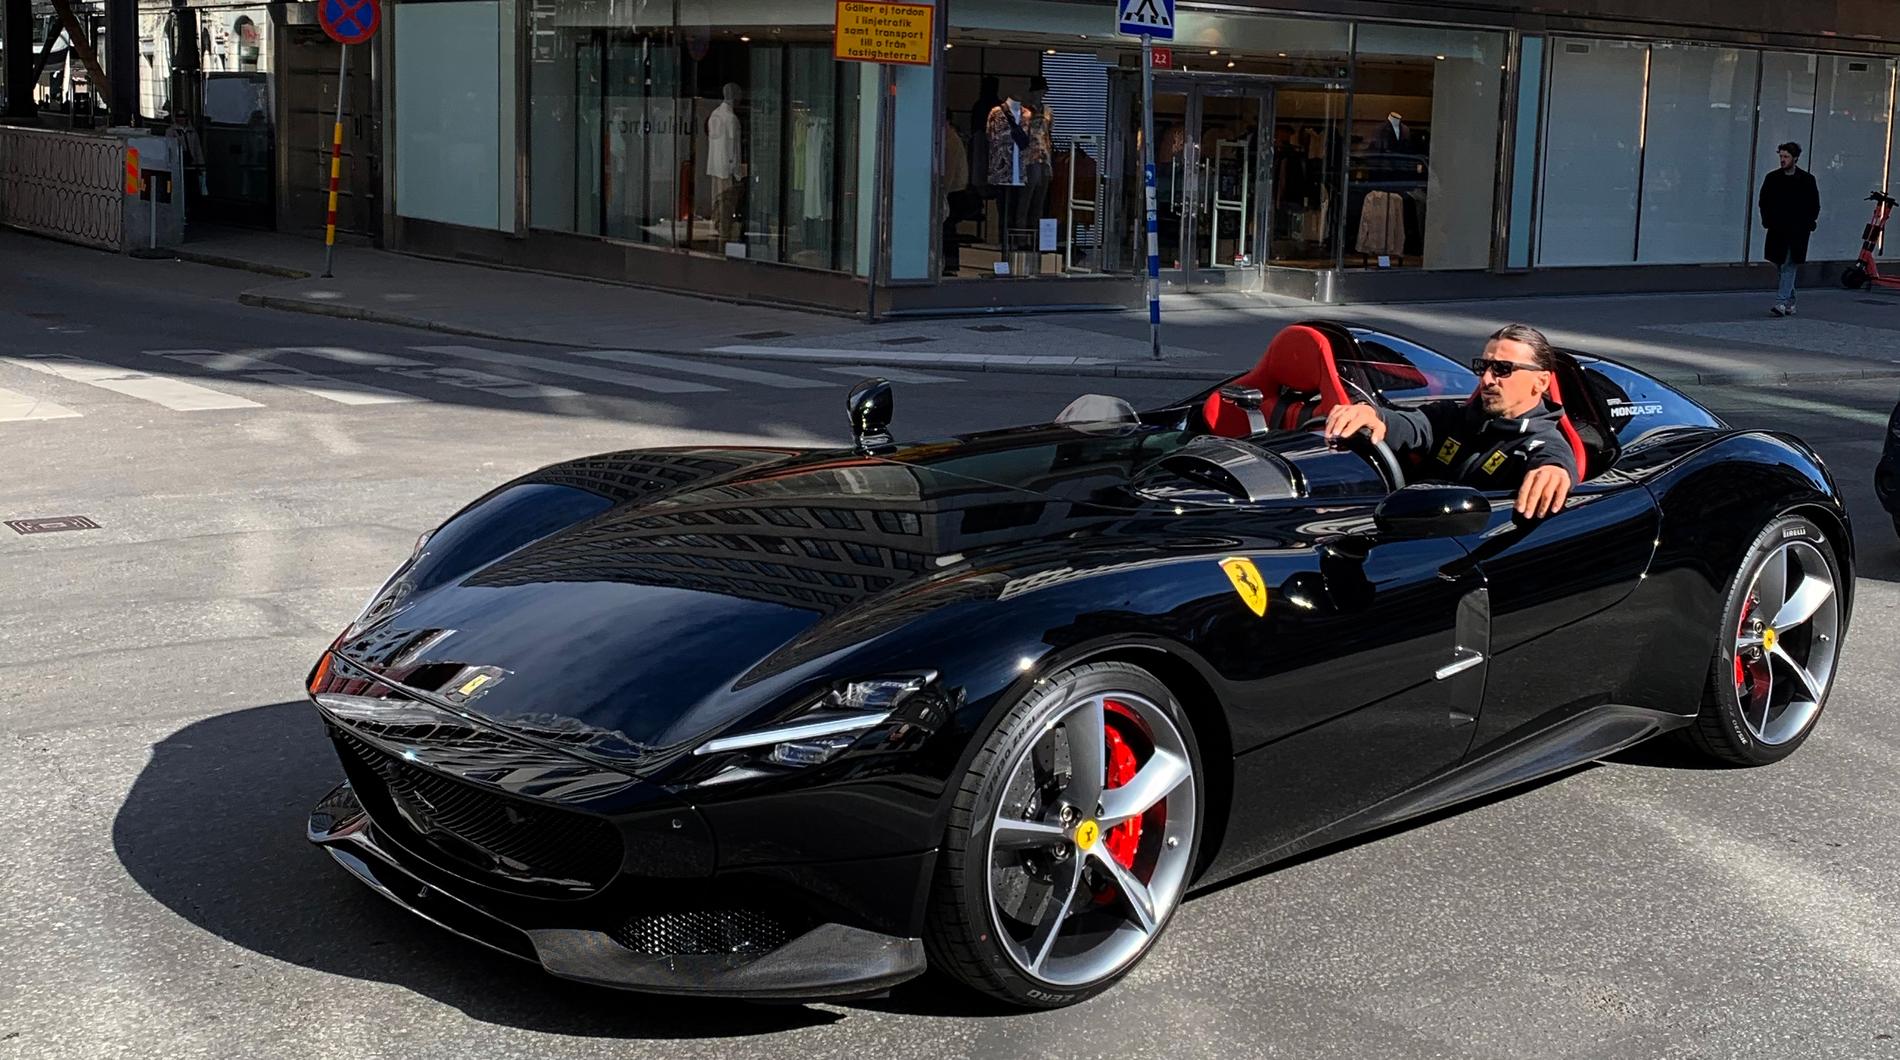  Zlatan Ibrahimovic körde olaligt i Ferrari Monza SP2. Bilden var avställd hos Transportstyrelsen.